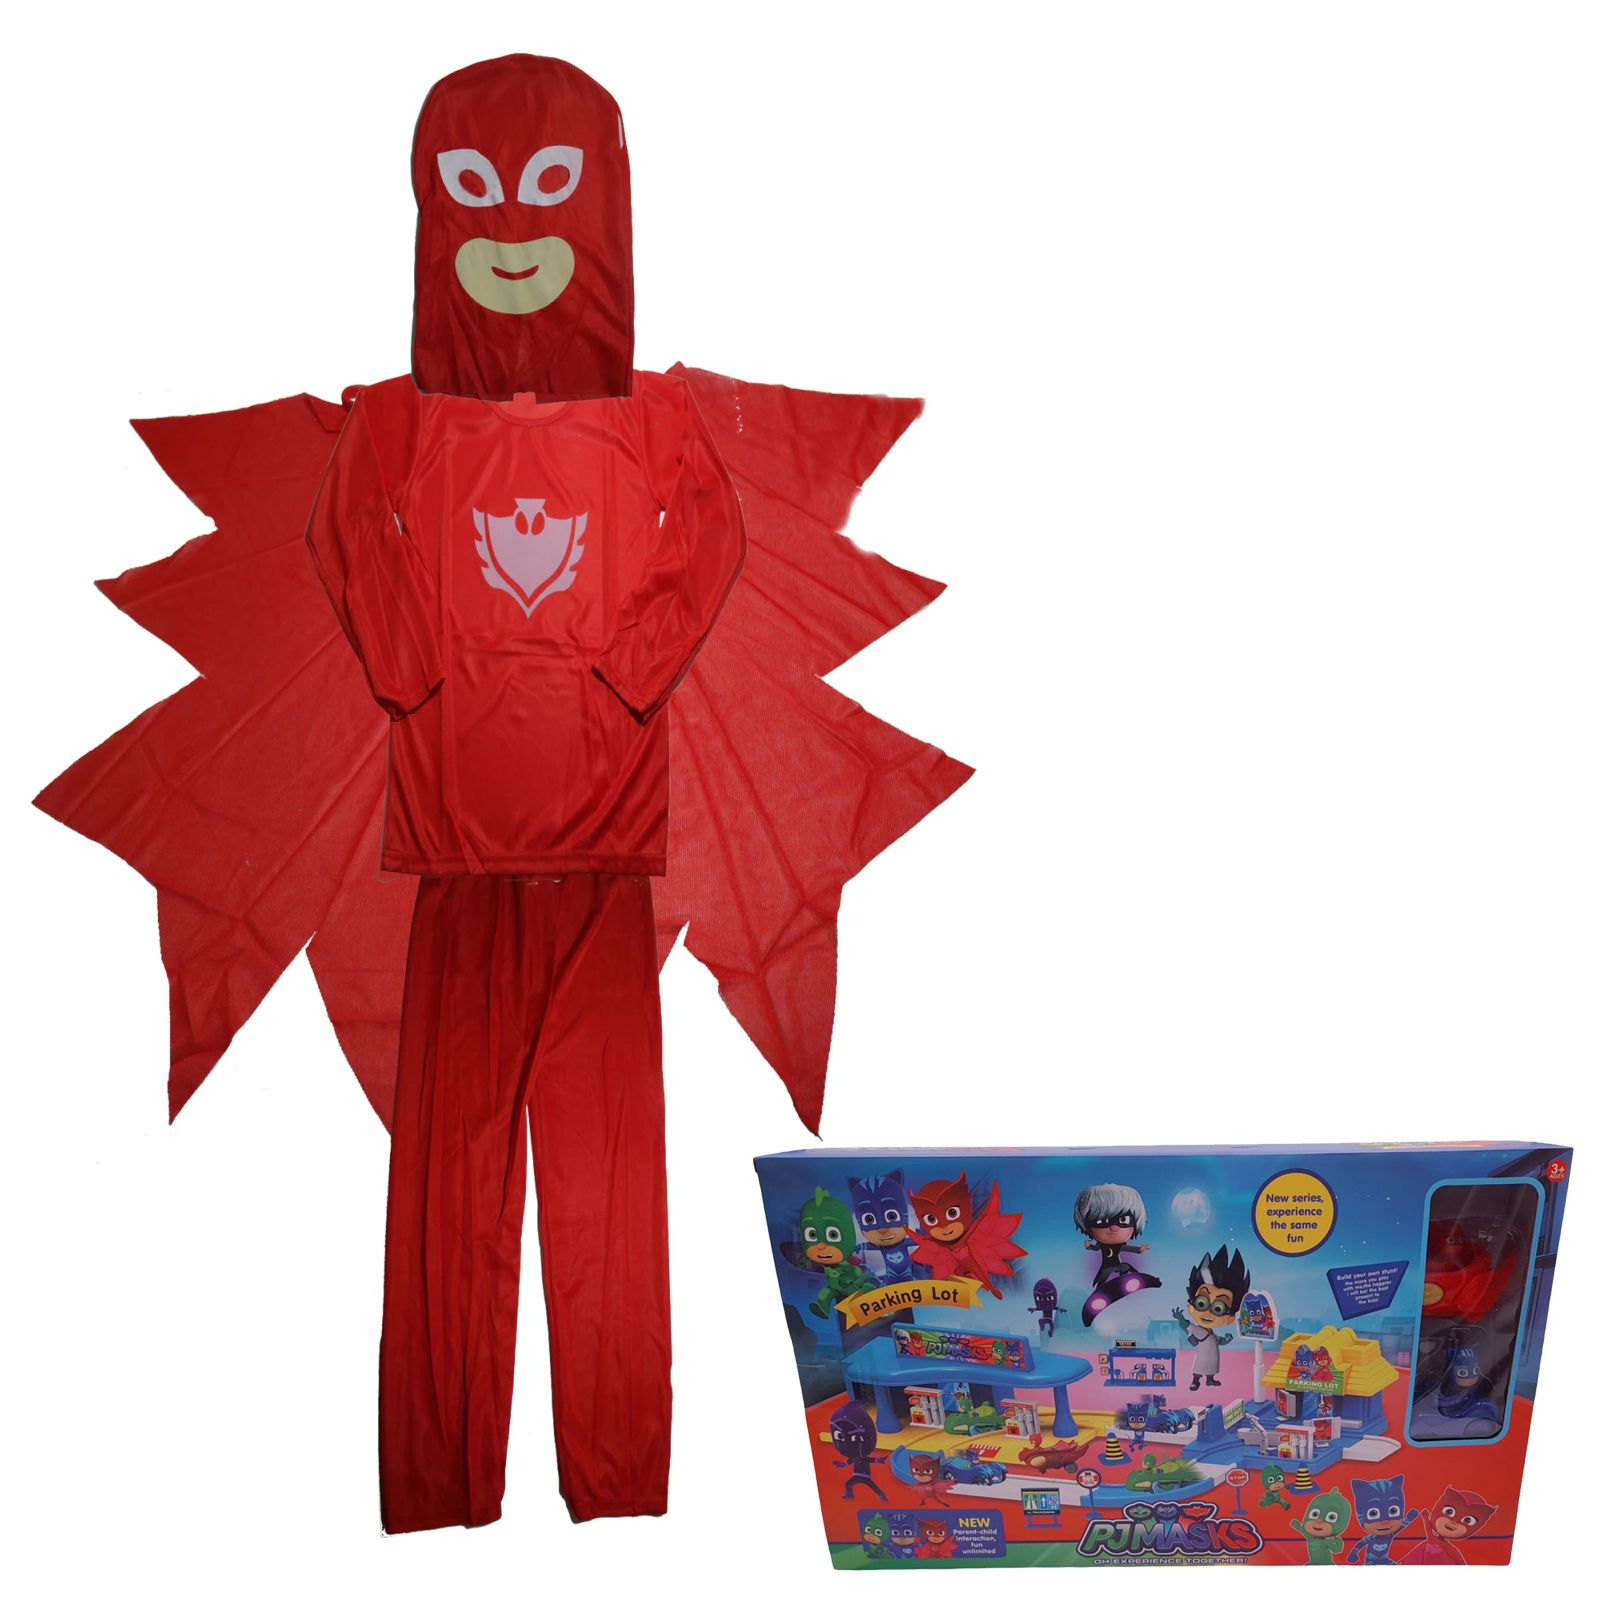 Costum pentru copii Red Owl, marime 3-5 ani, 100-110, cu garaj inclus